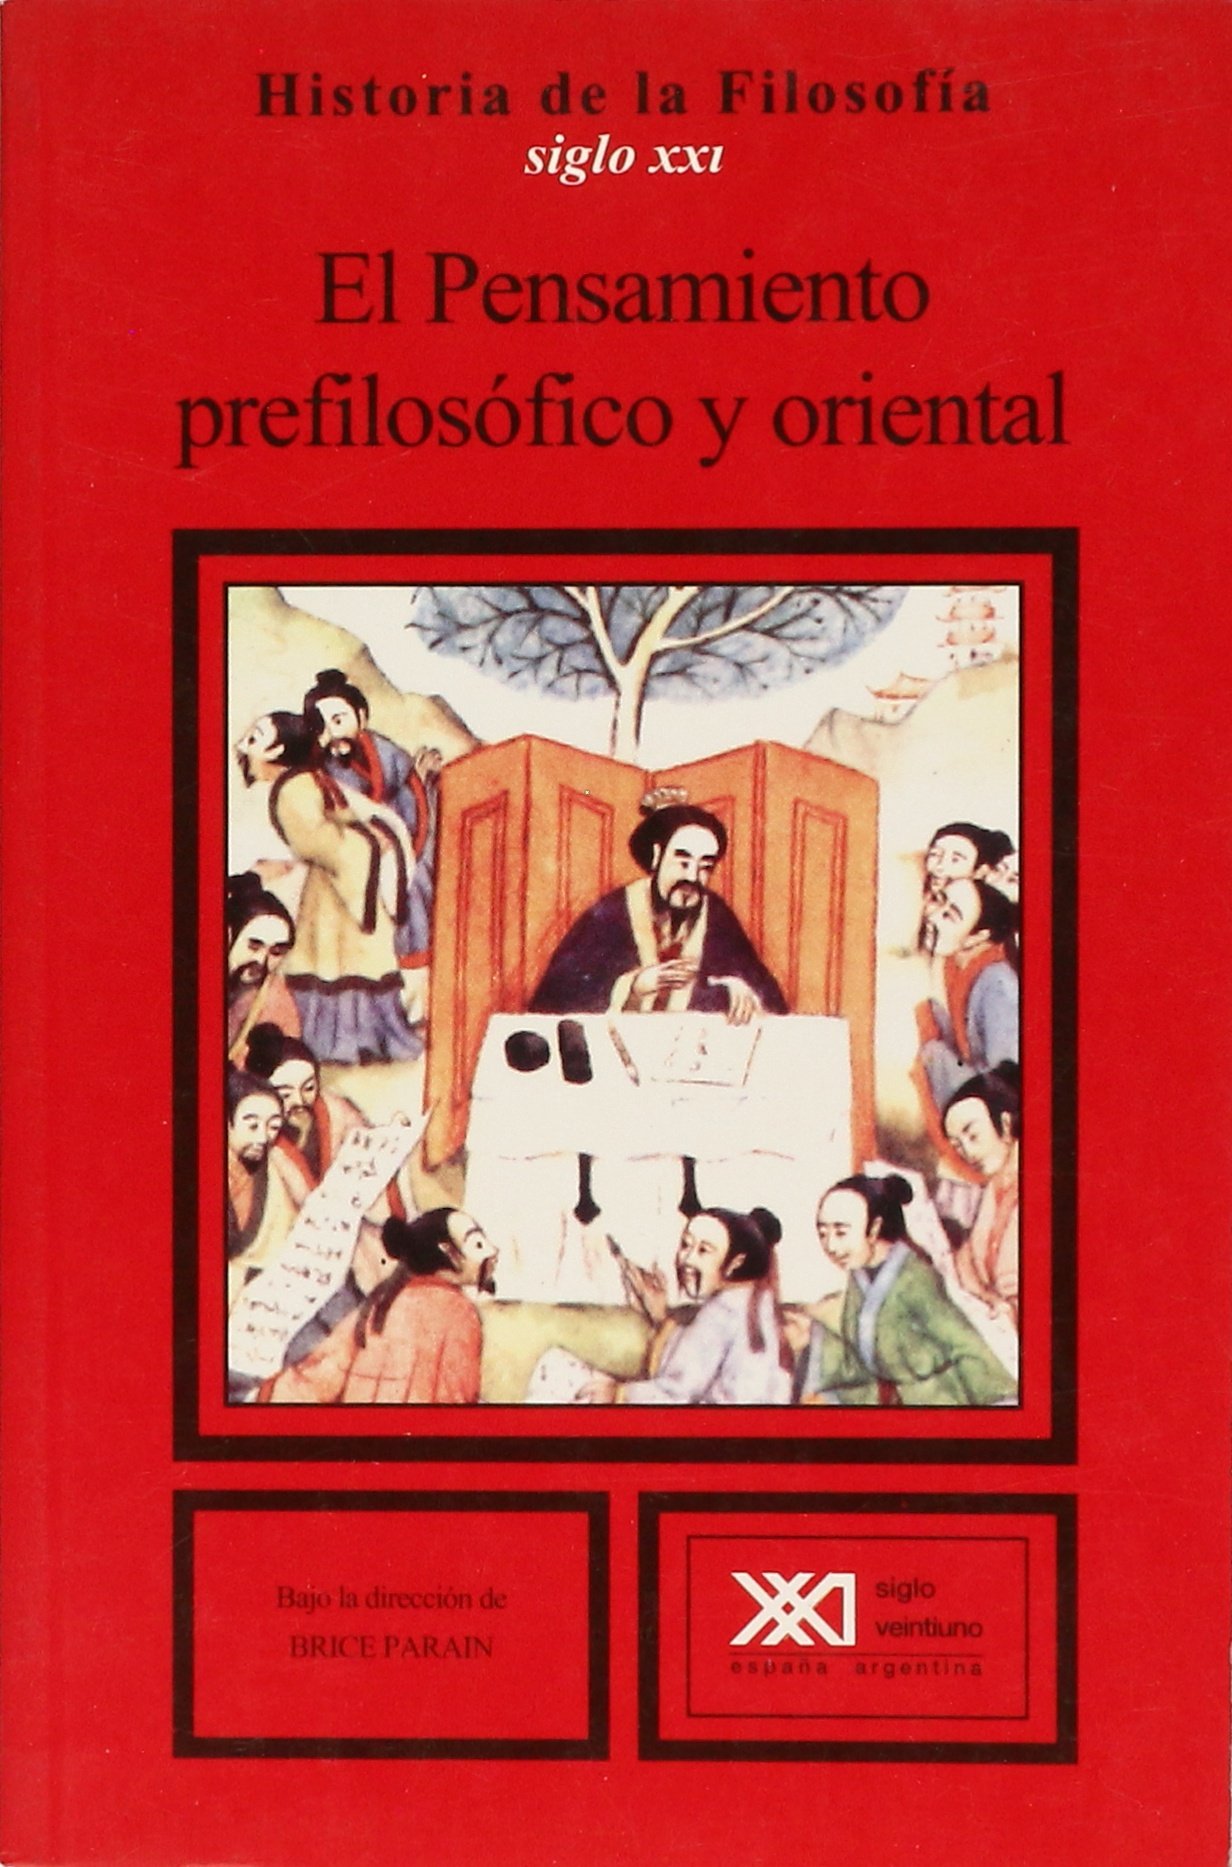 Imagen de portada del libro Historia de la filosofía